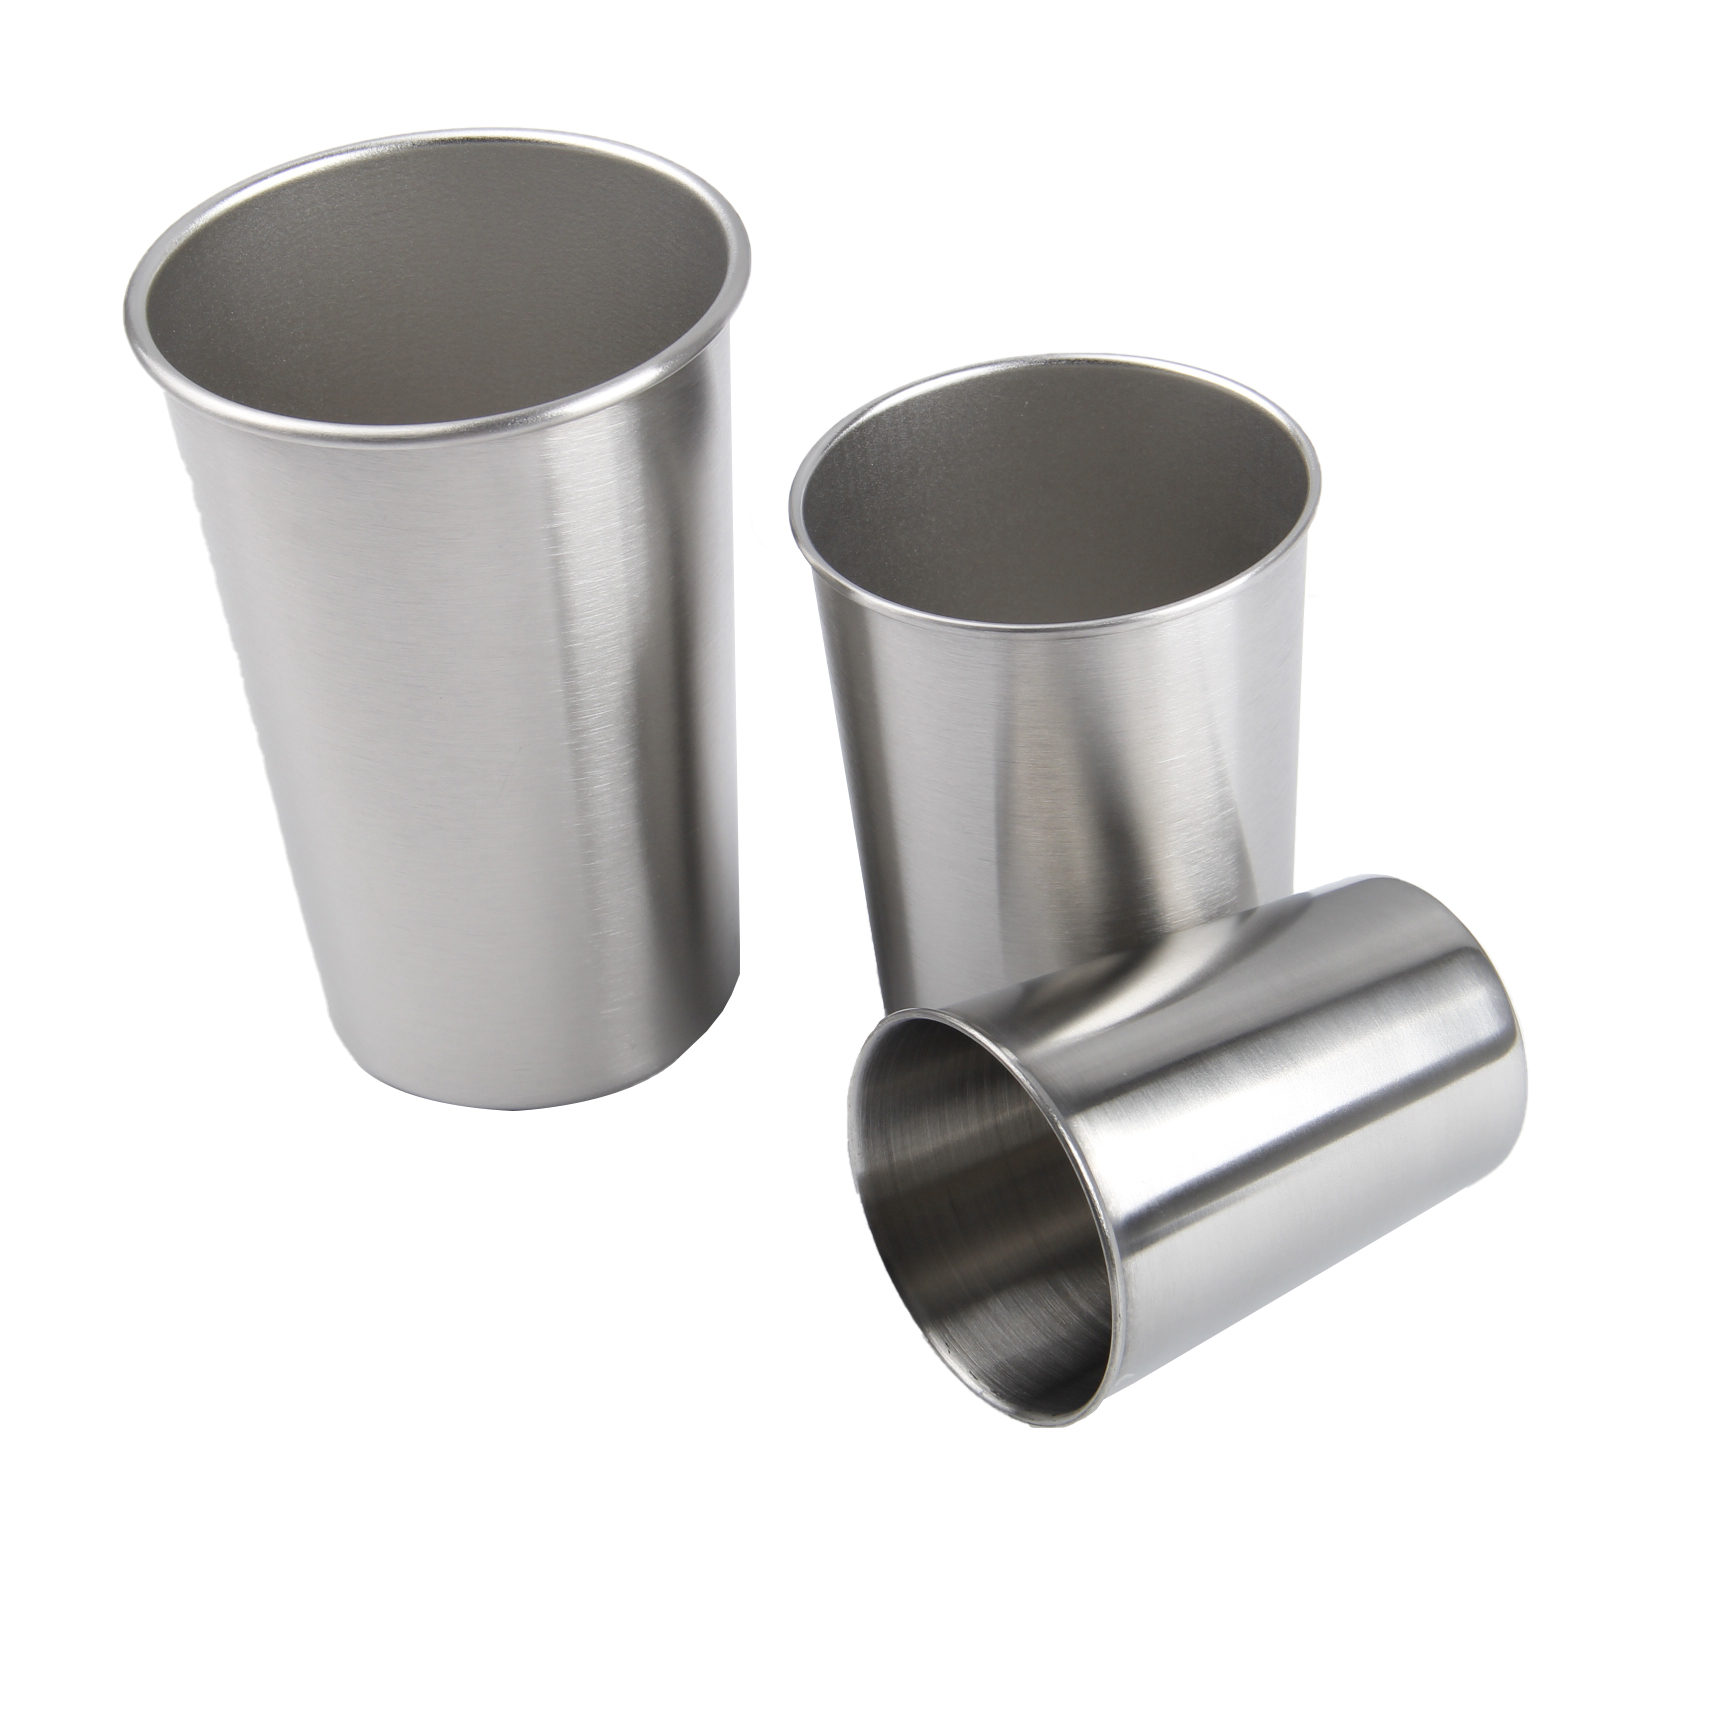 Custom Printed 10 oz. Stainless Steel Pint Cup2